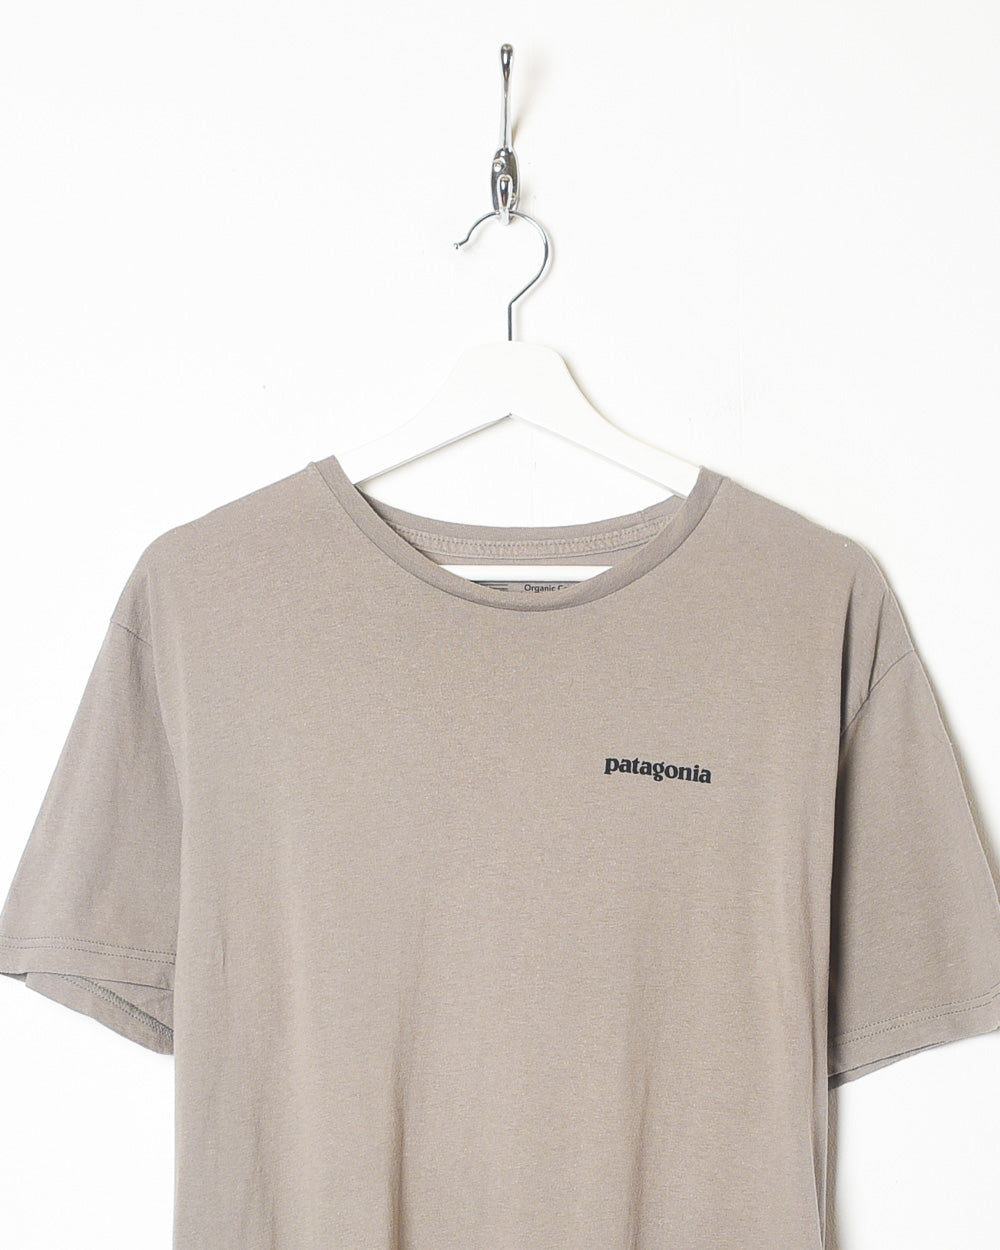 Brown Patagonia T-Shirt - Large